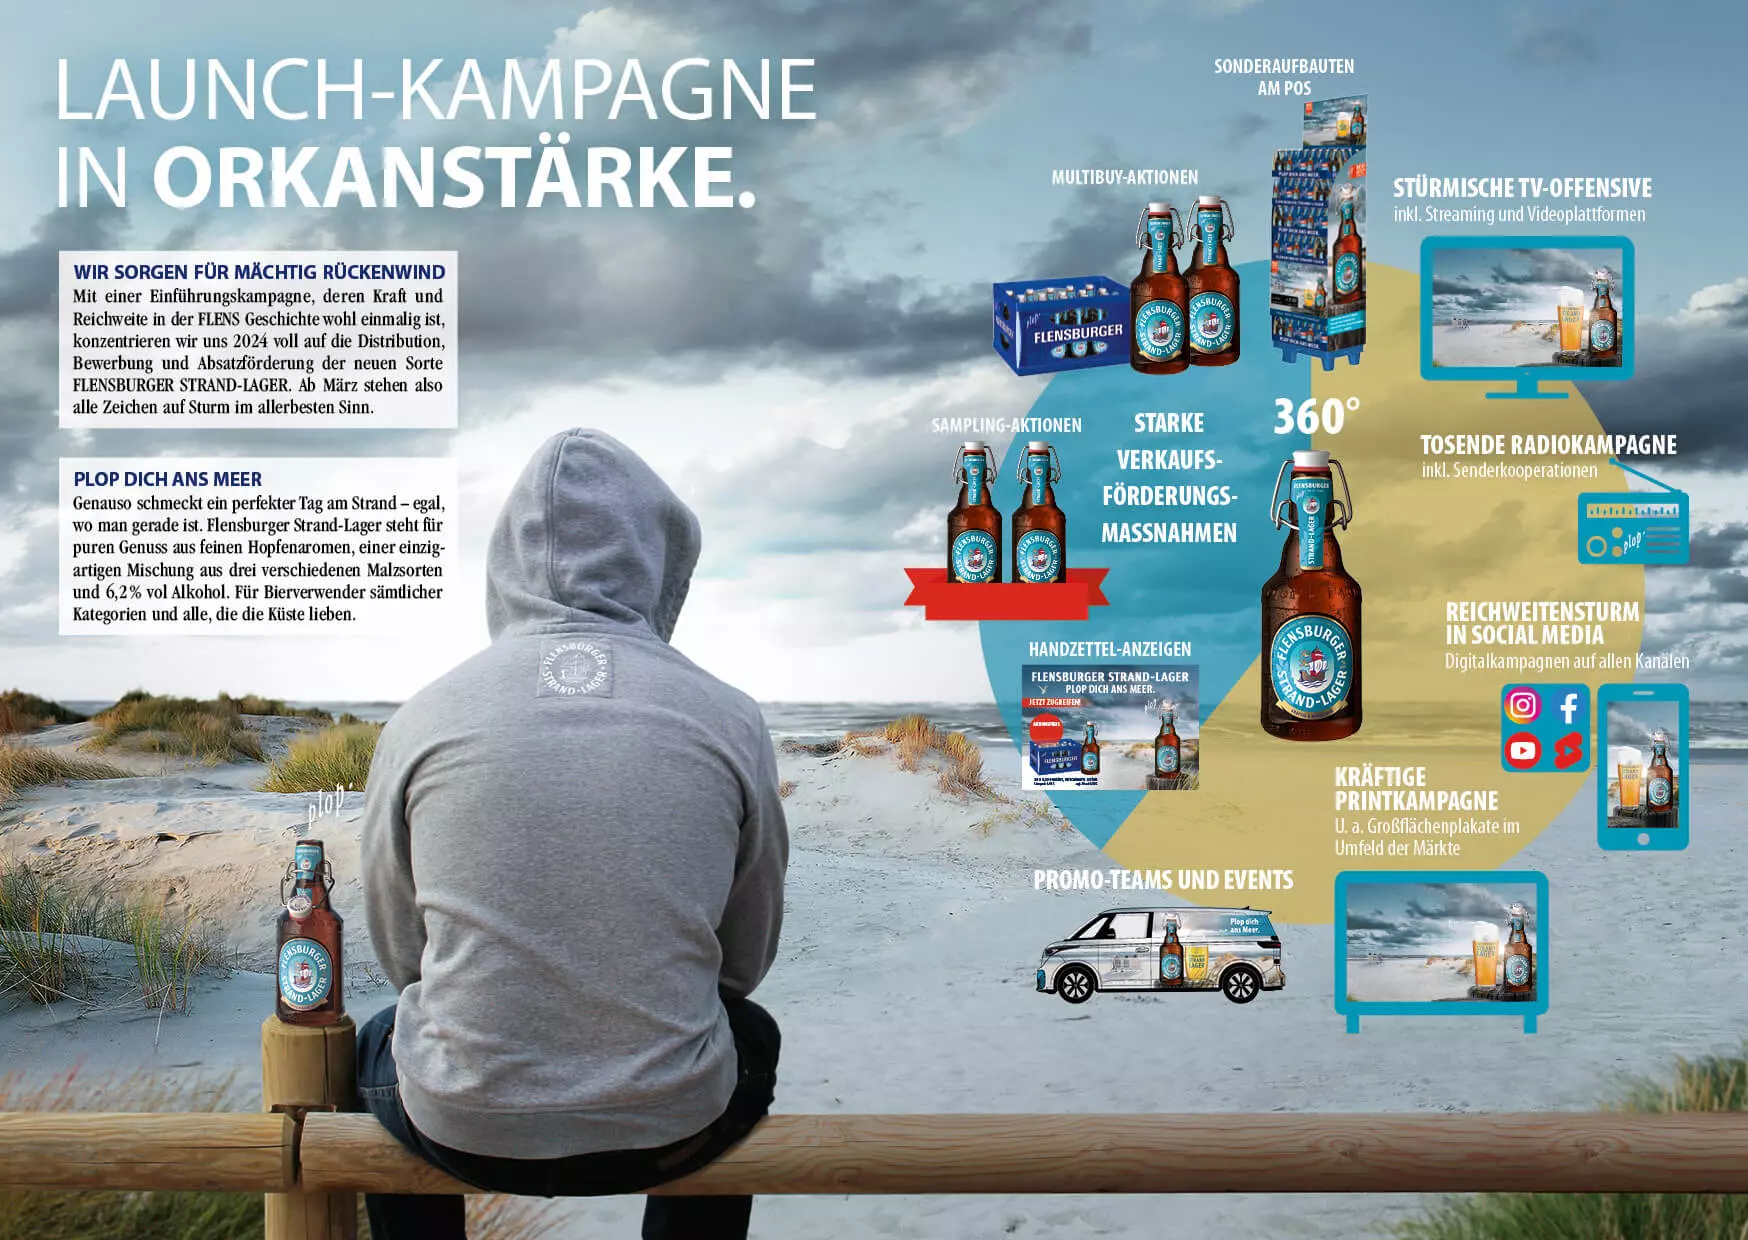 Launch-Kamapgne in Orkanstärke: Infos über die Werbekampagne.